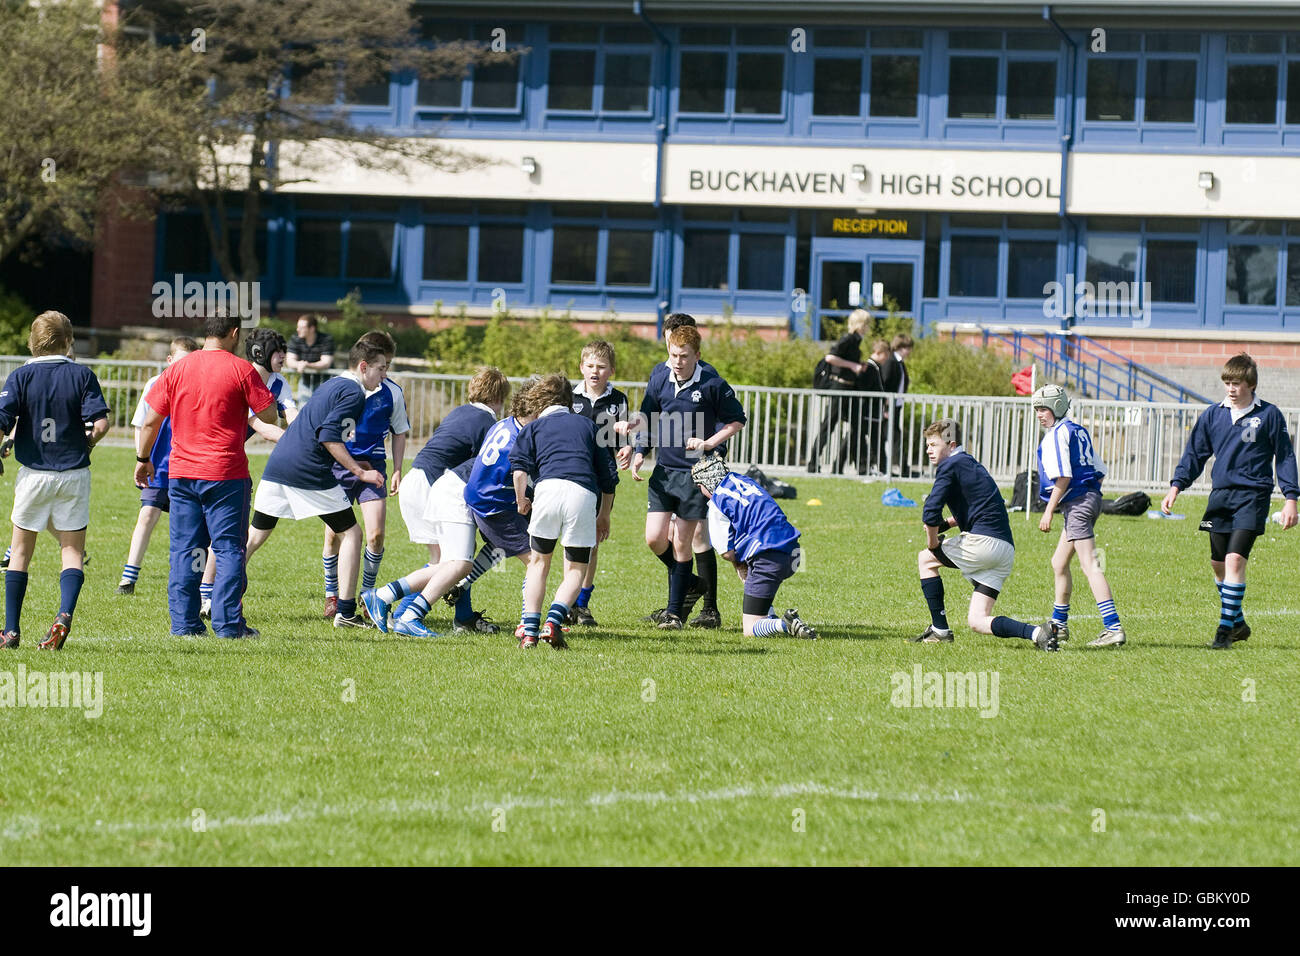 Rugby Union - HSBC Scuole Emergenti Festival - Buckhaven Foto Stock